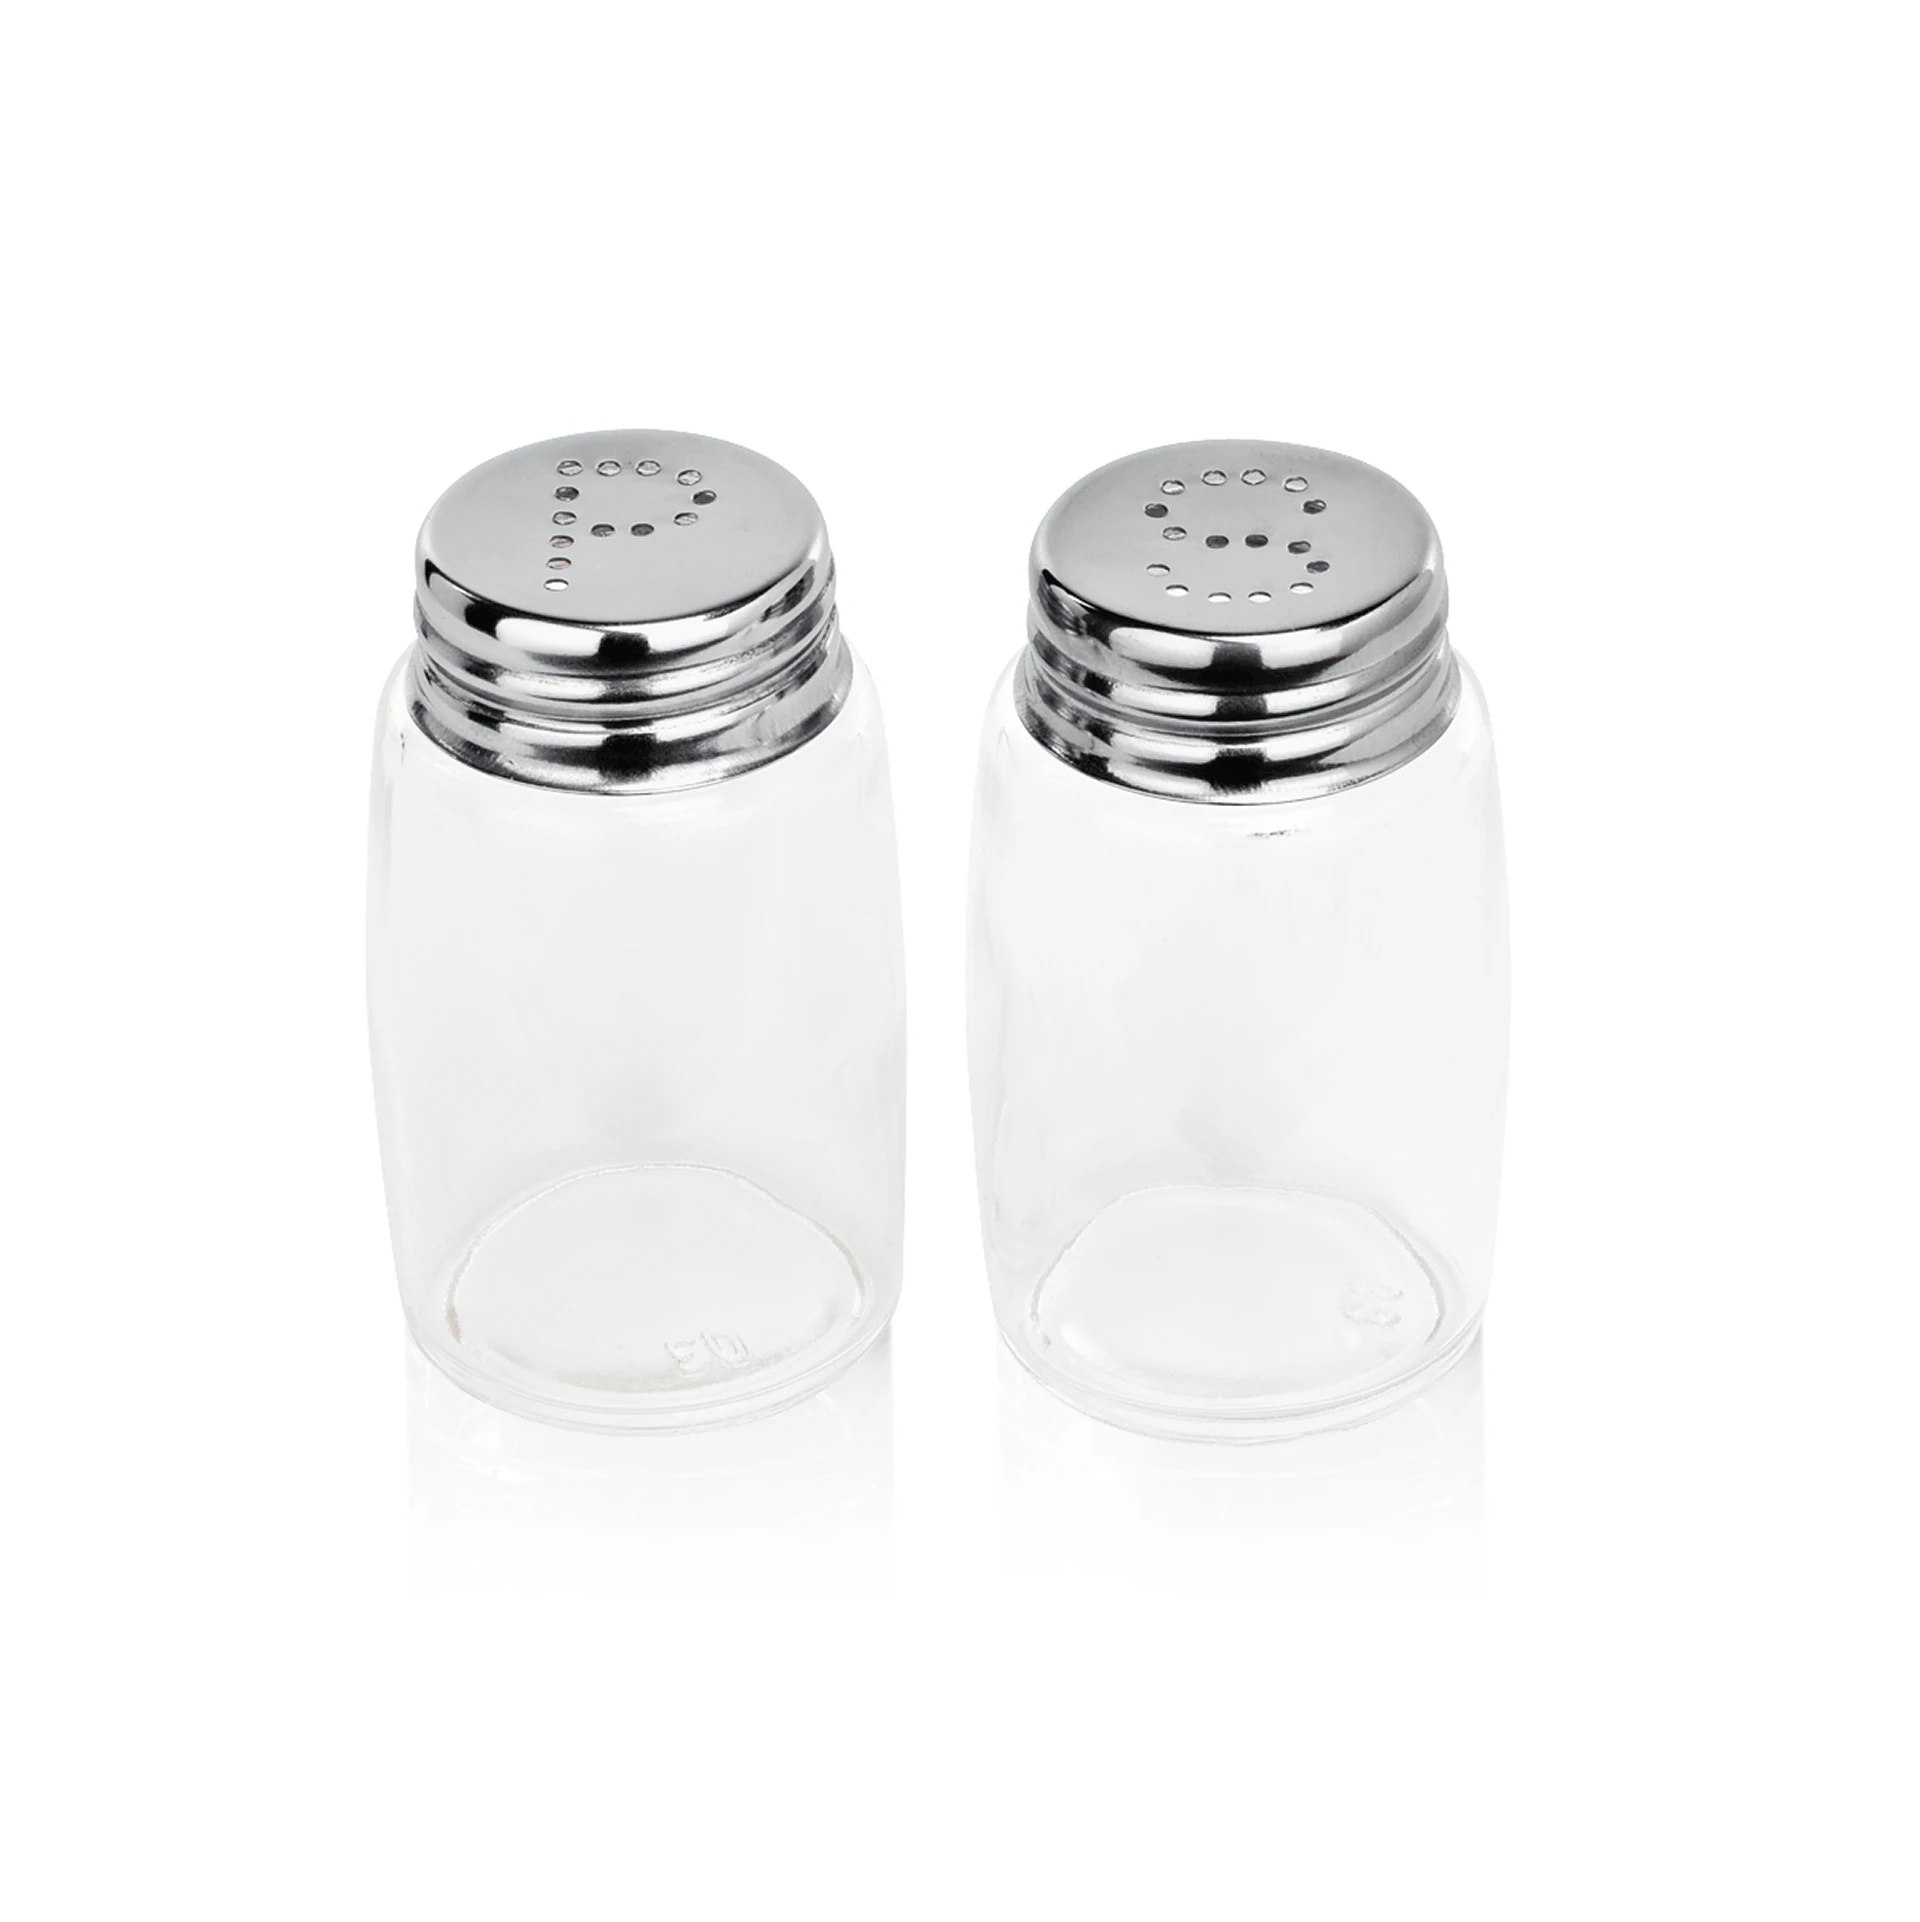 Salt/pepper shaker set